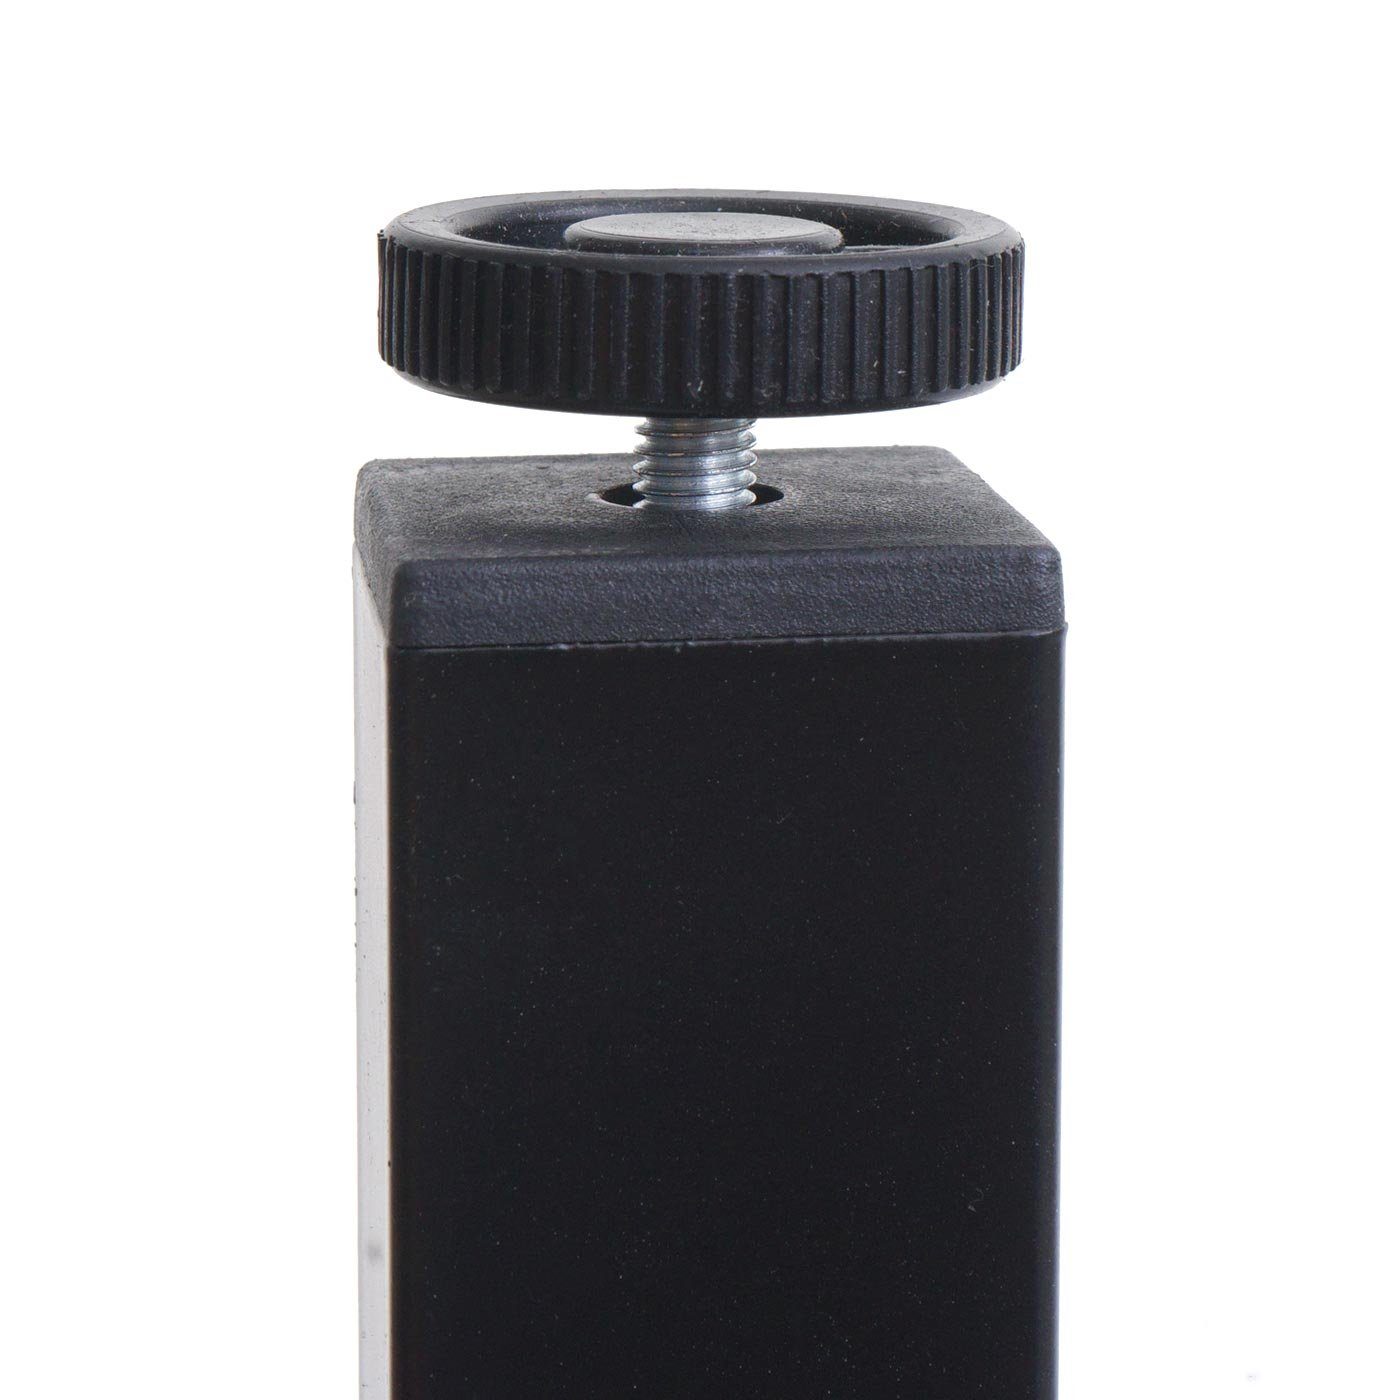 MCW-E94, Kabelkanäle, Zwei Melaminbeschichtet schwarz anpassbare Schreibtisch MCW